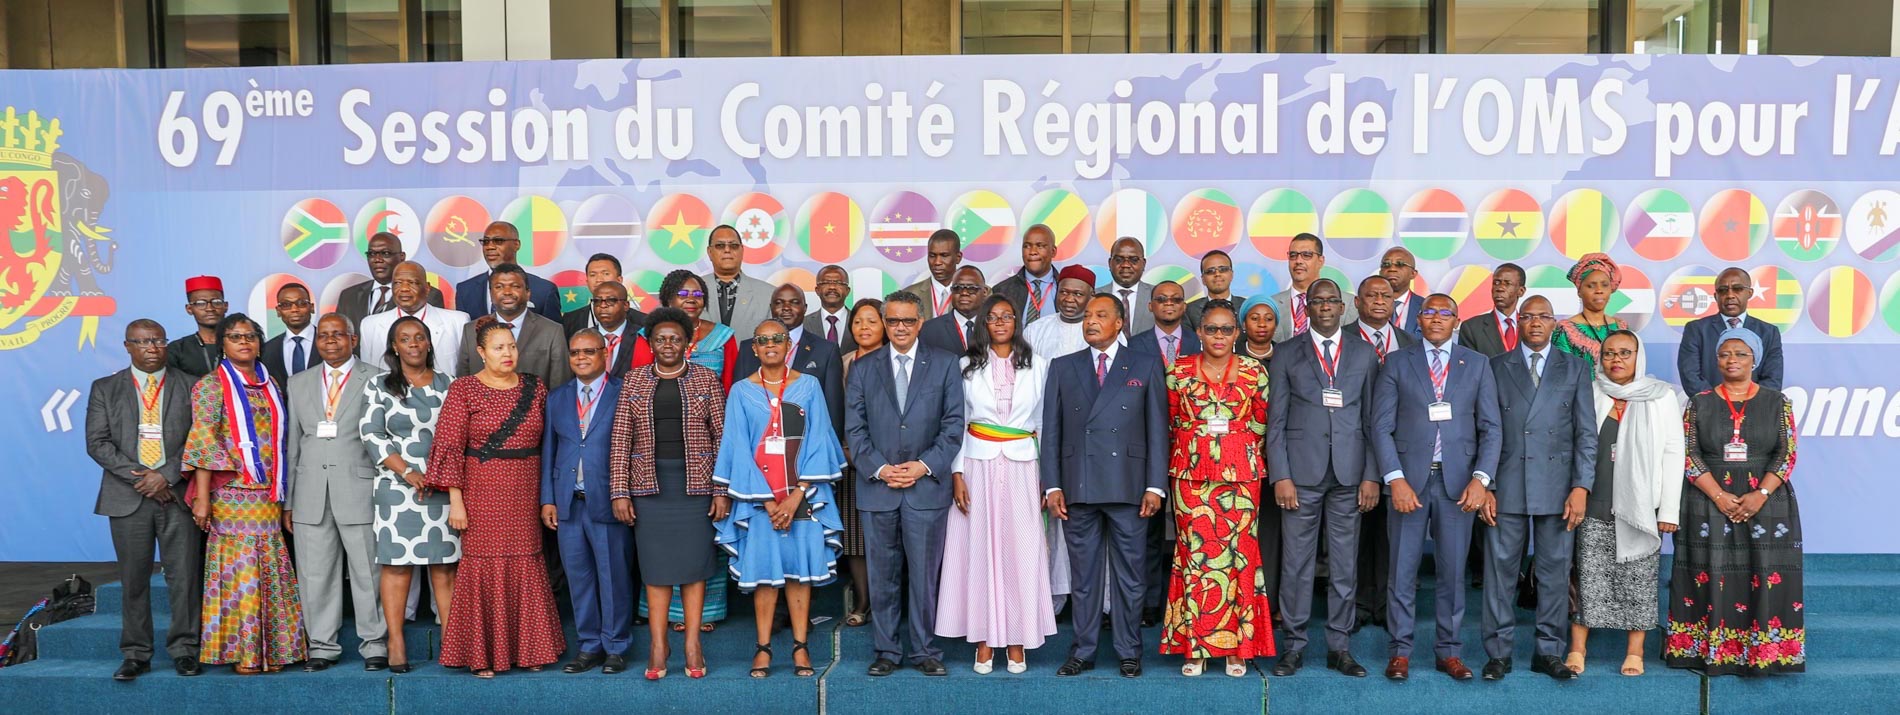 Ouverture d'une réunion ministérielle pour définir le programme de santé de l'Afrique à Brazzaville